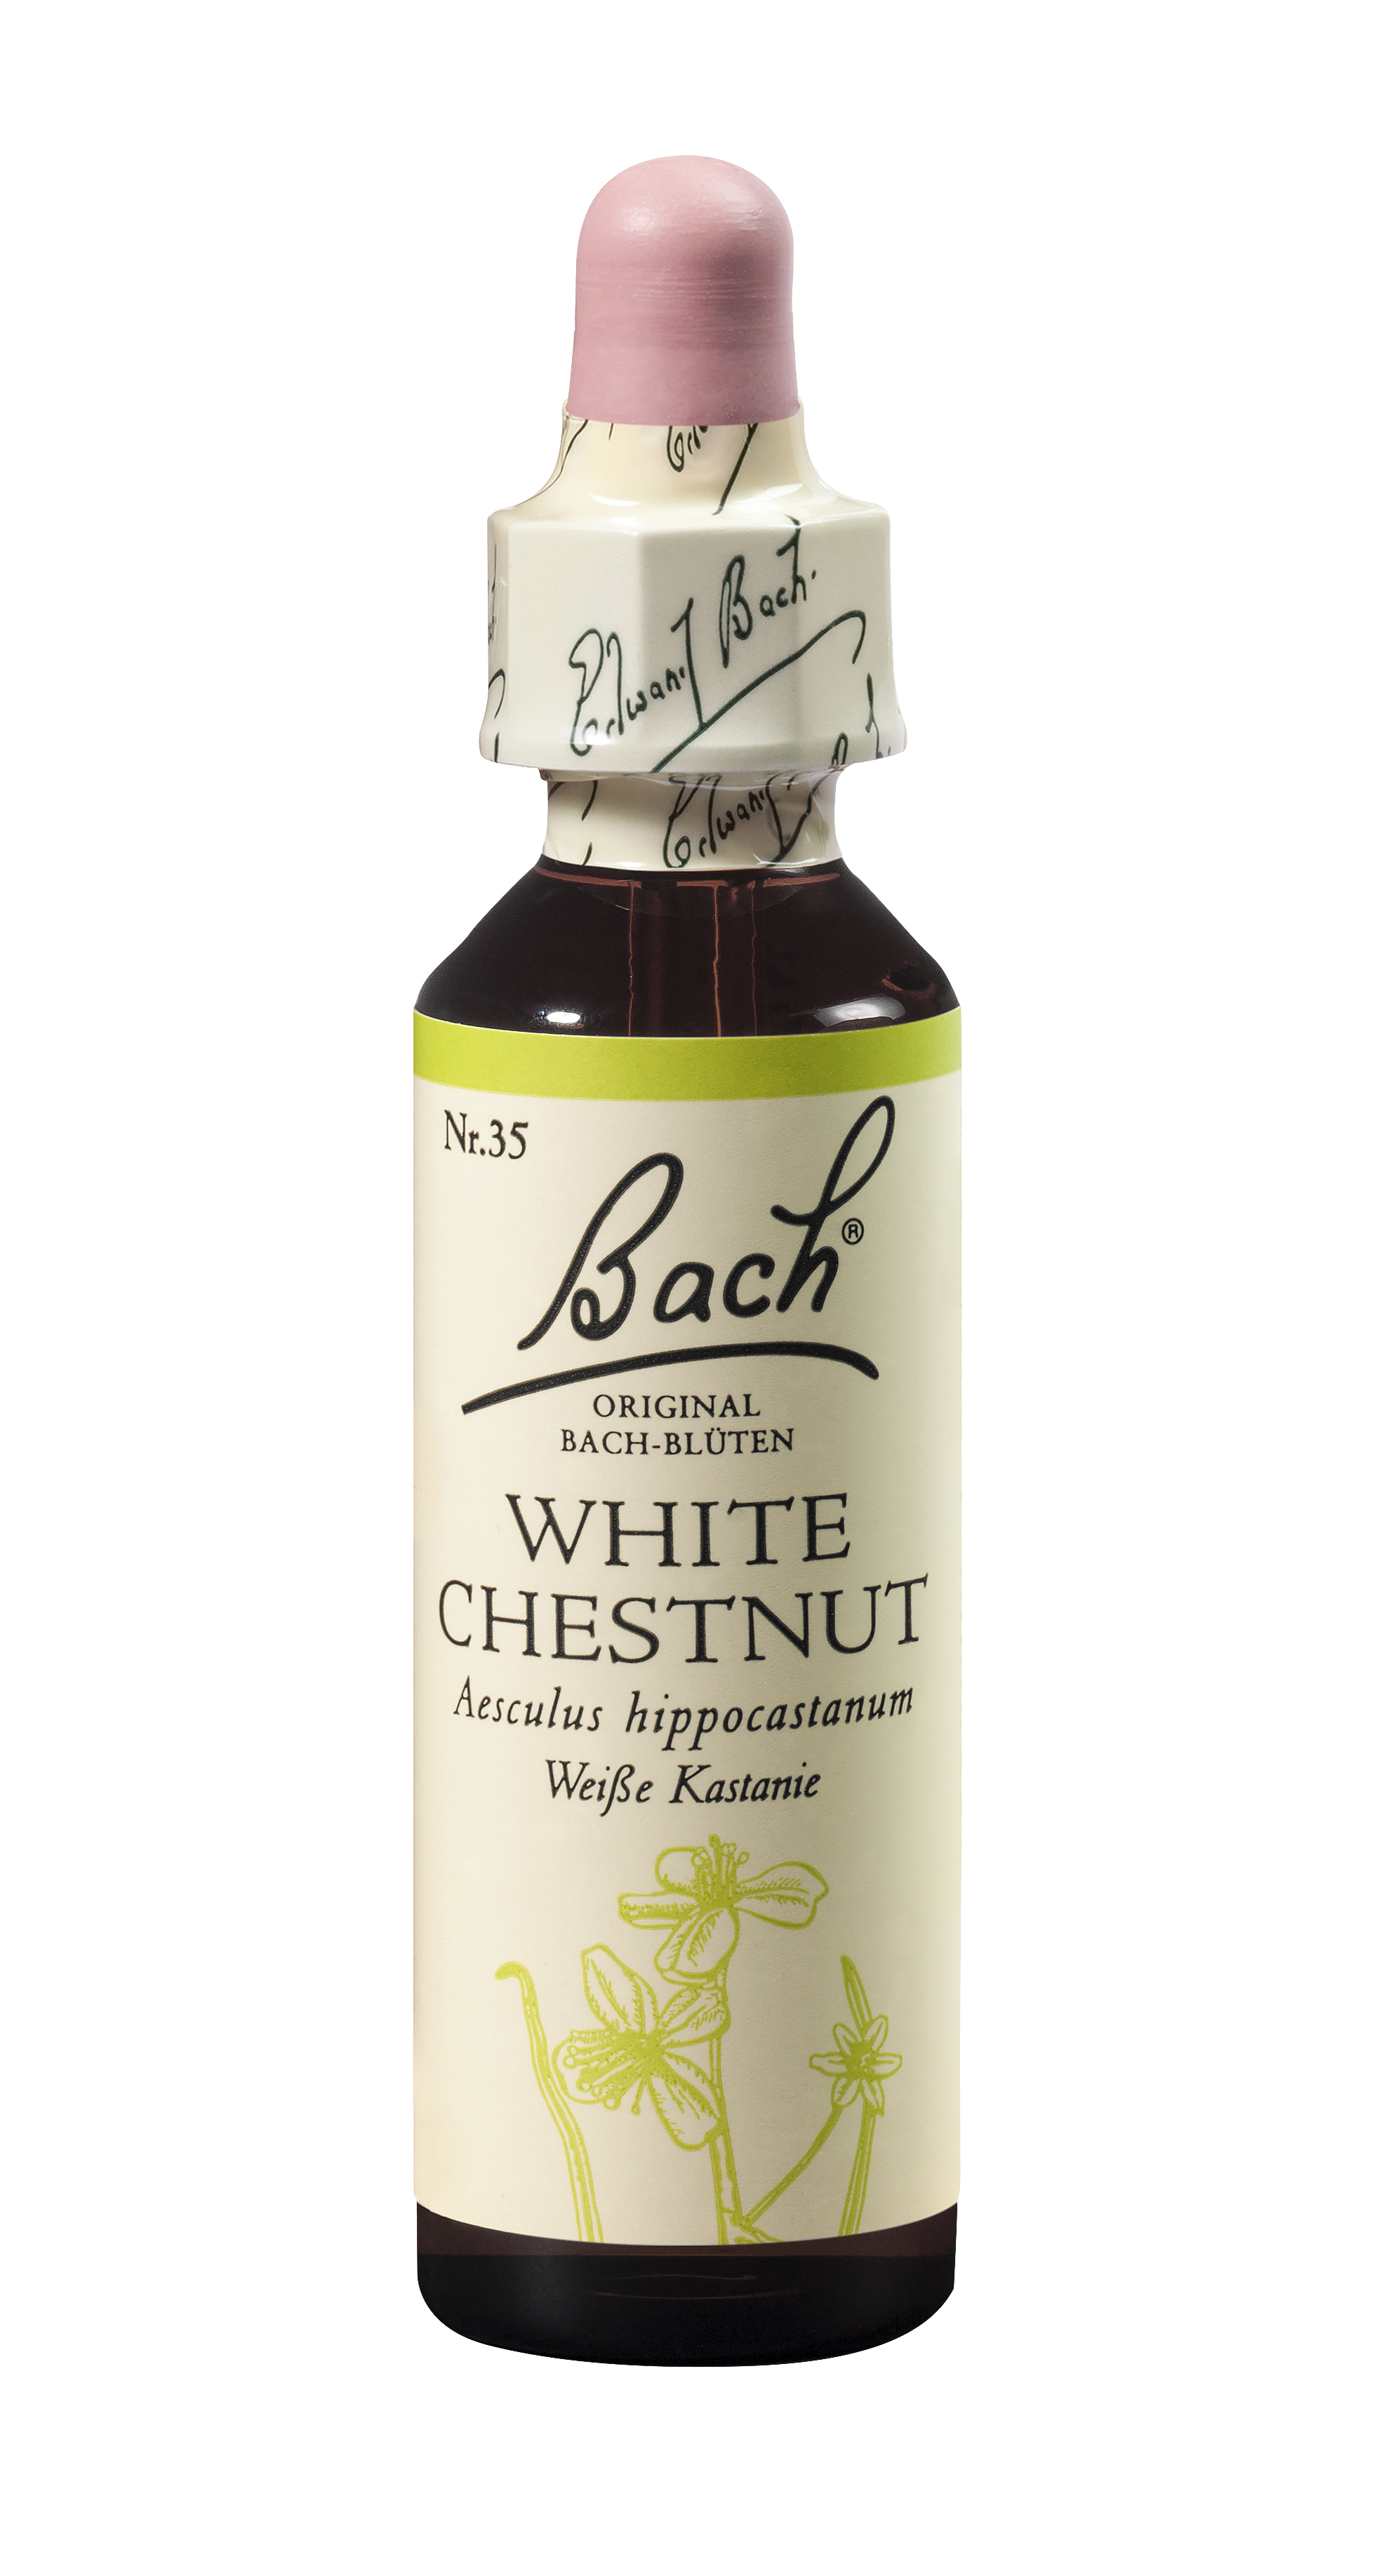 Bach®-Blüte Nr. 35 White Chestnut (Weiße Kastanie)